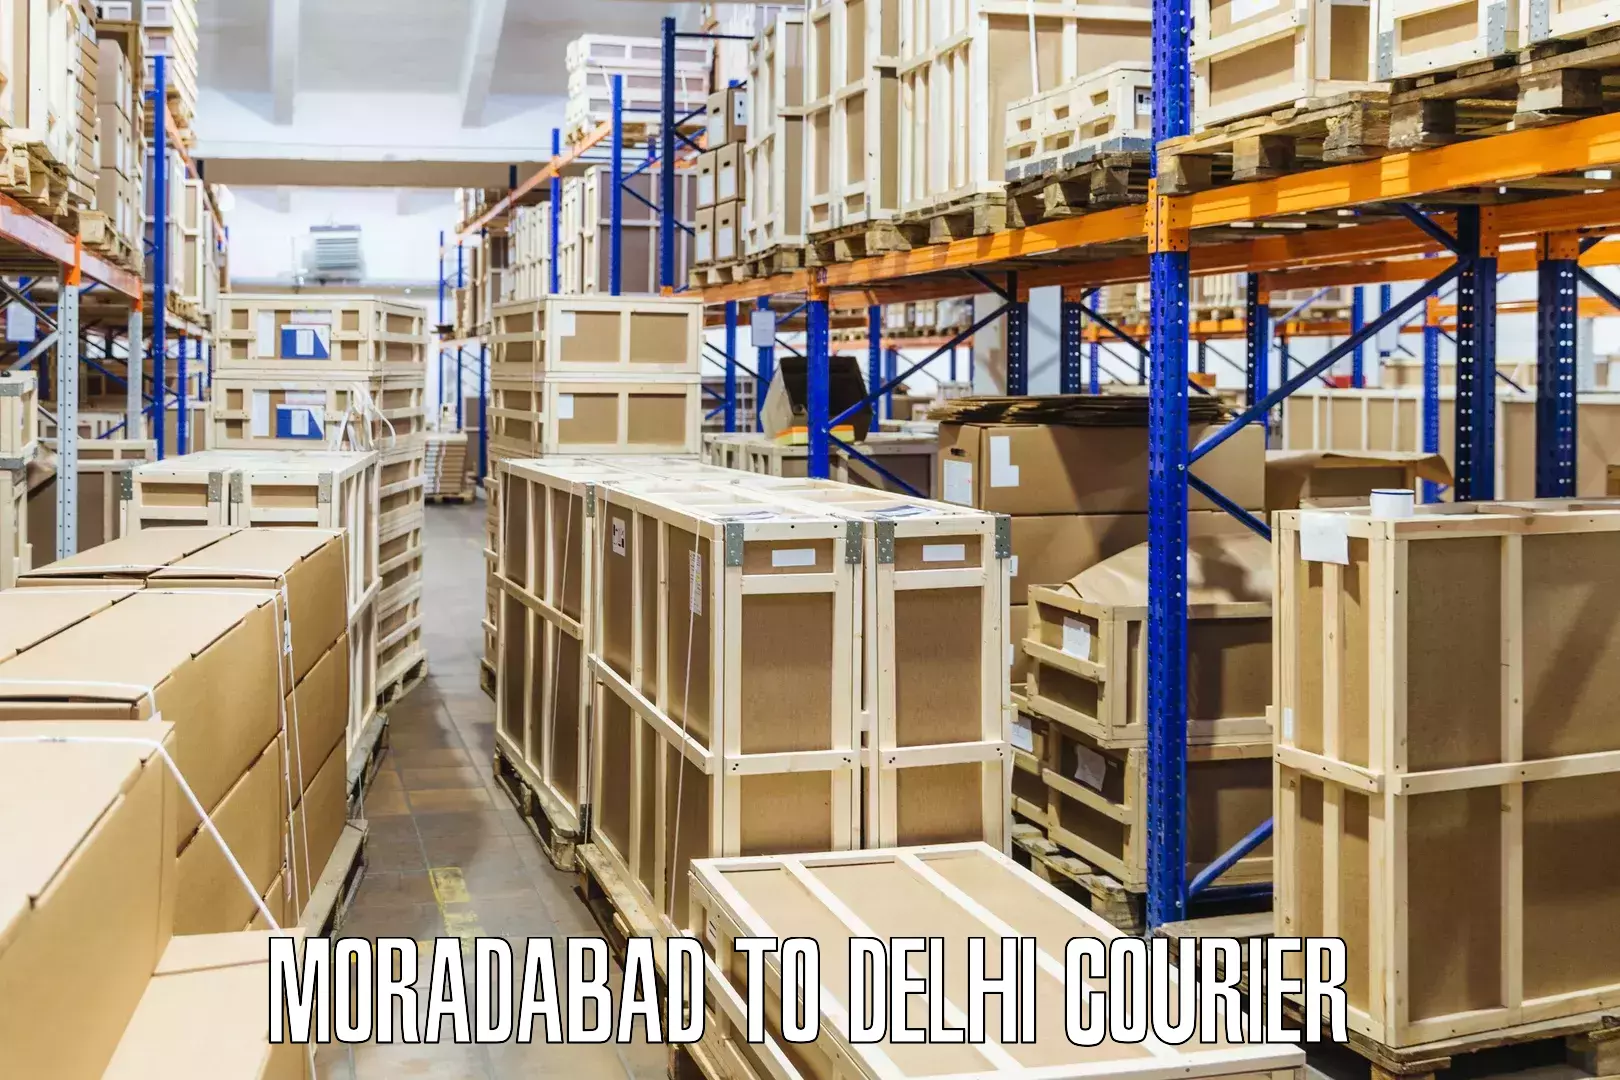 Global freight services Moradabad to Burari